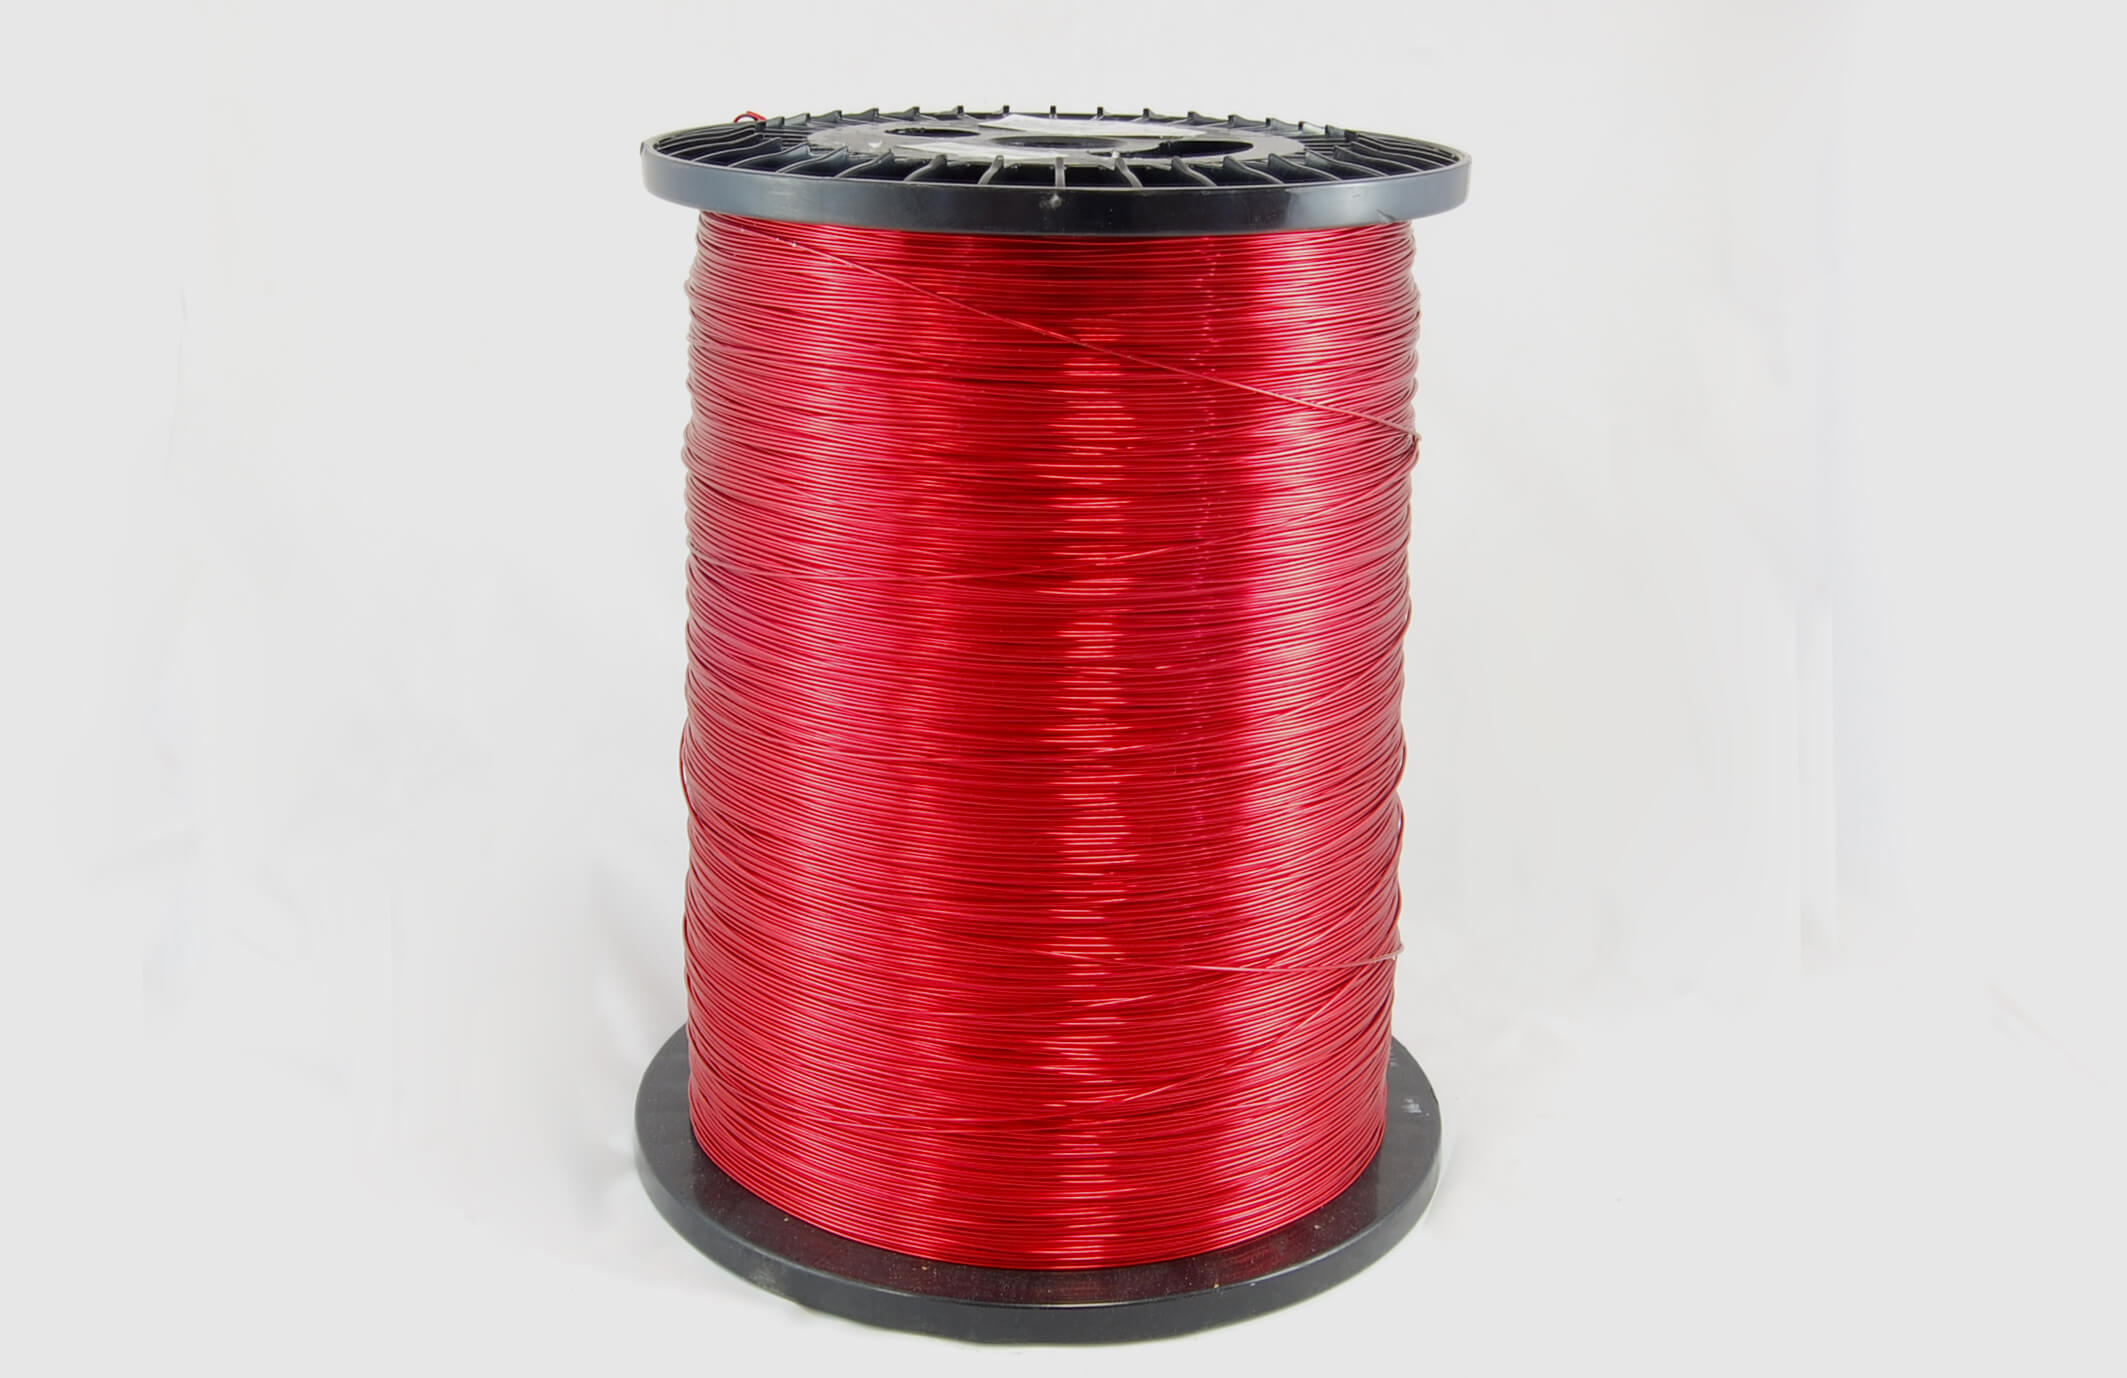 #18 Single Nysol  Round SNSR MW 80 Copper Magnet Wire 155°C, red, 85 LB box (average wght.)